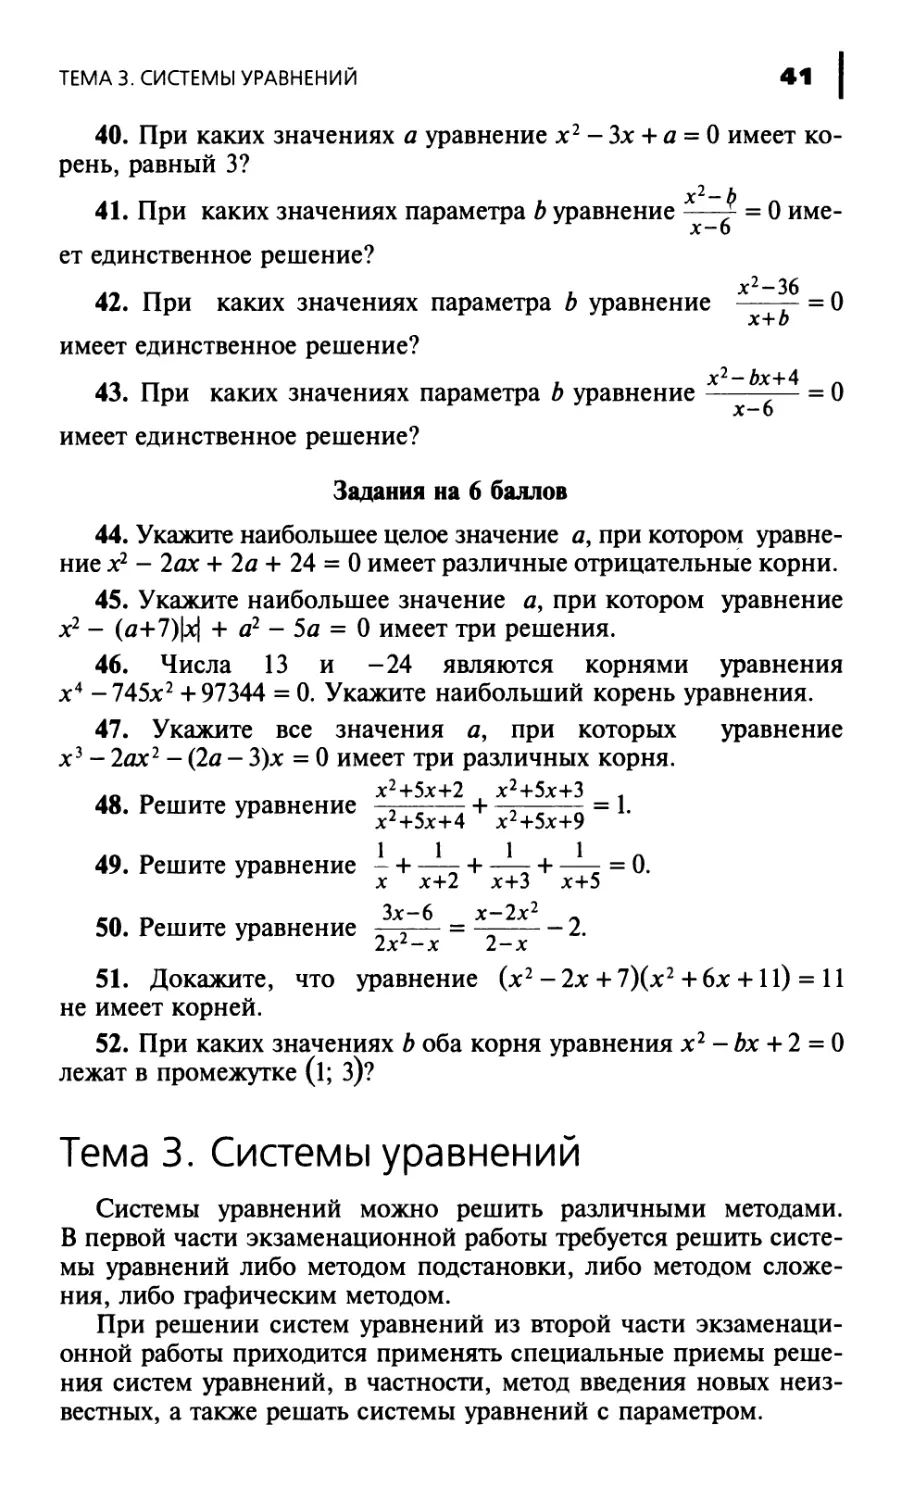 Тема 3. Системы уравнений